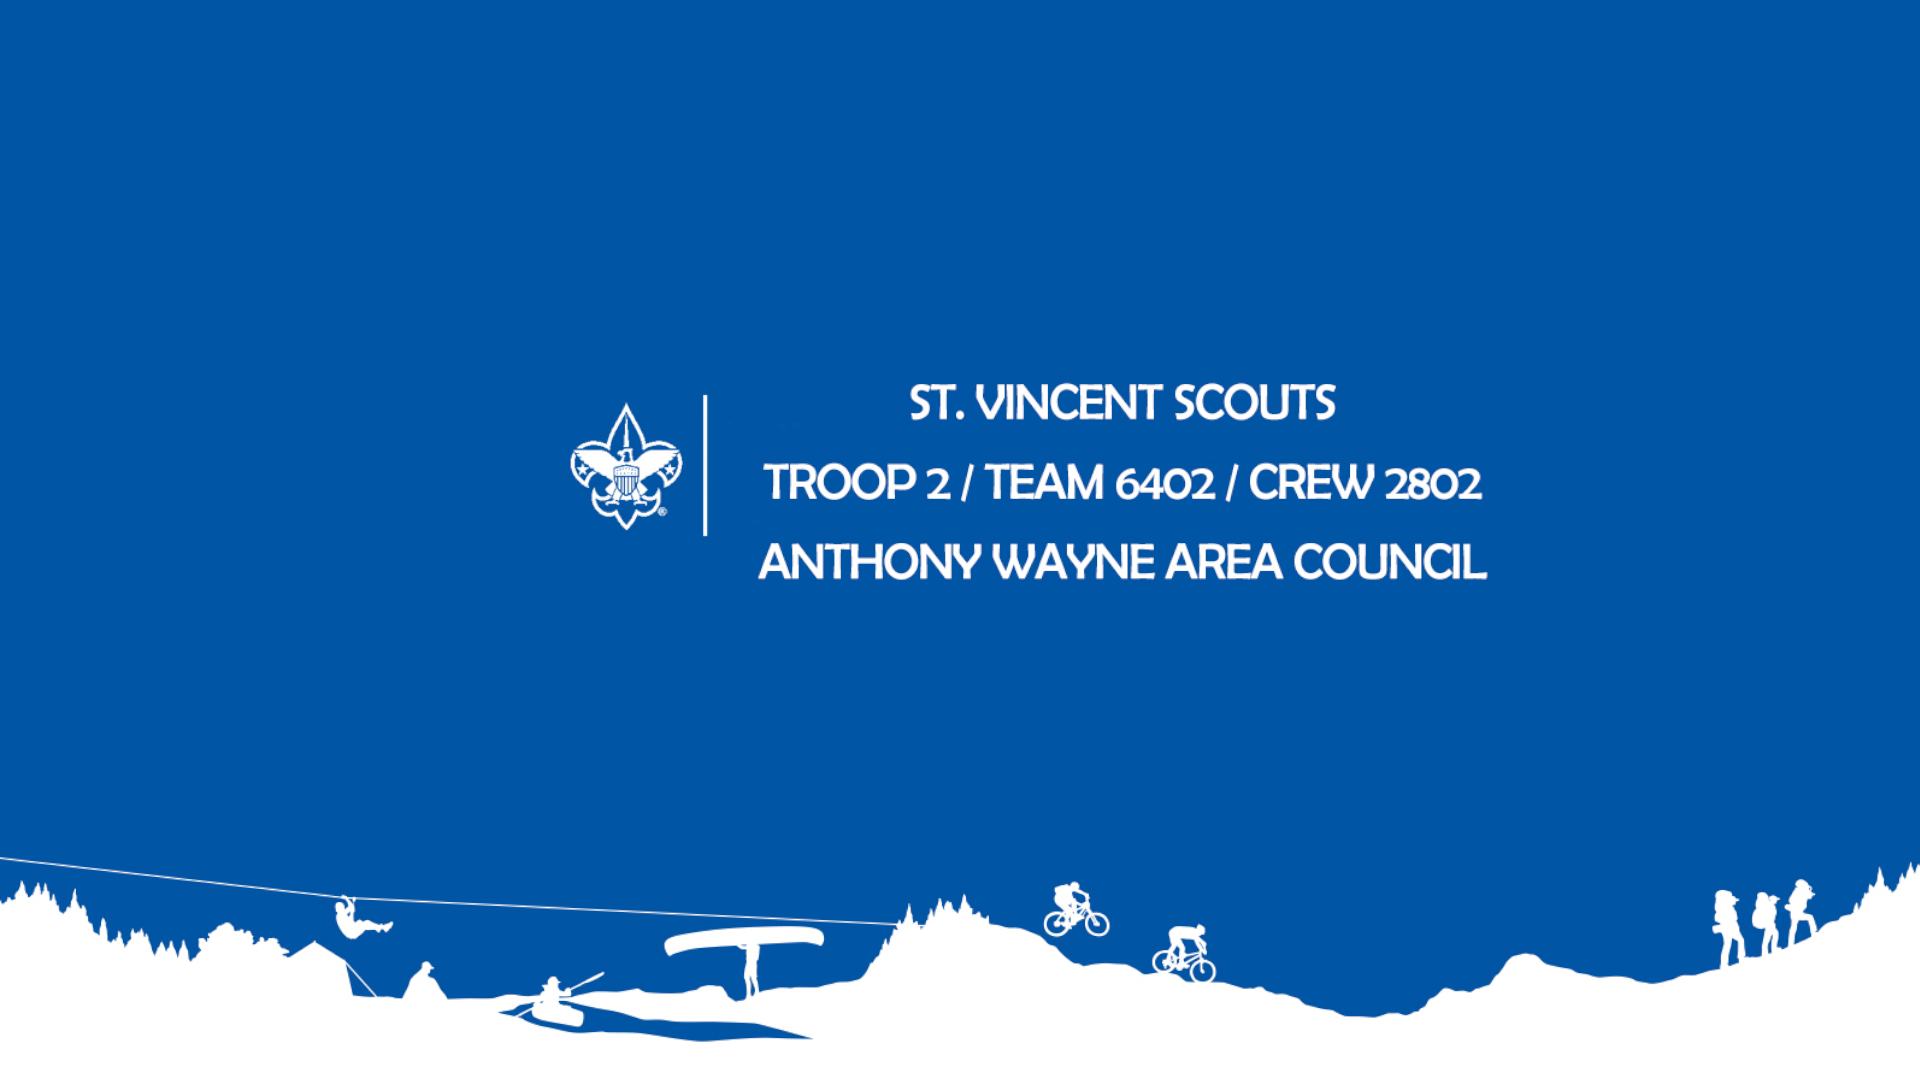 St. Vincent Scouts